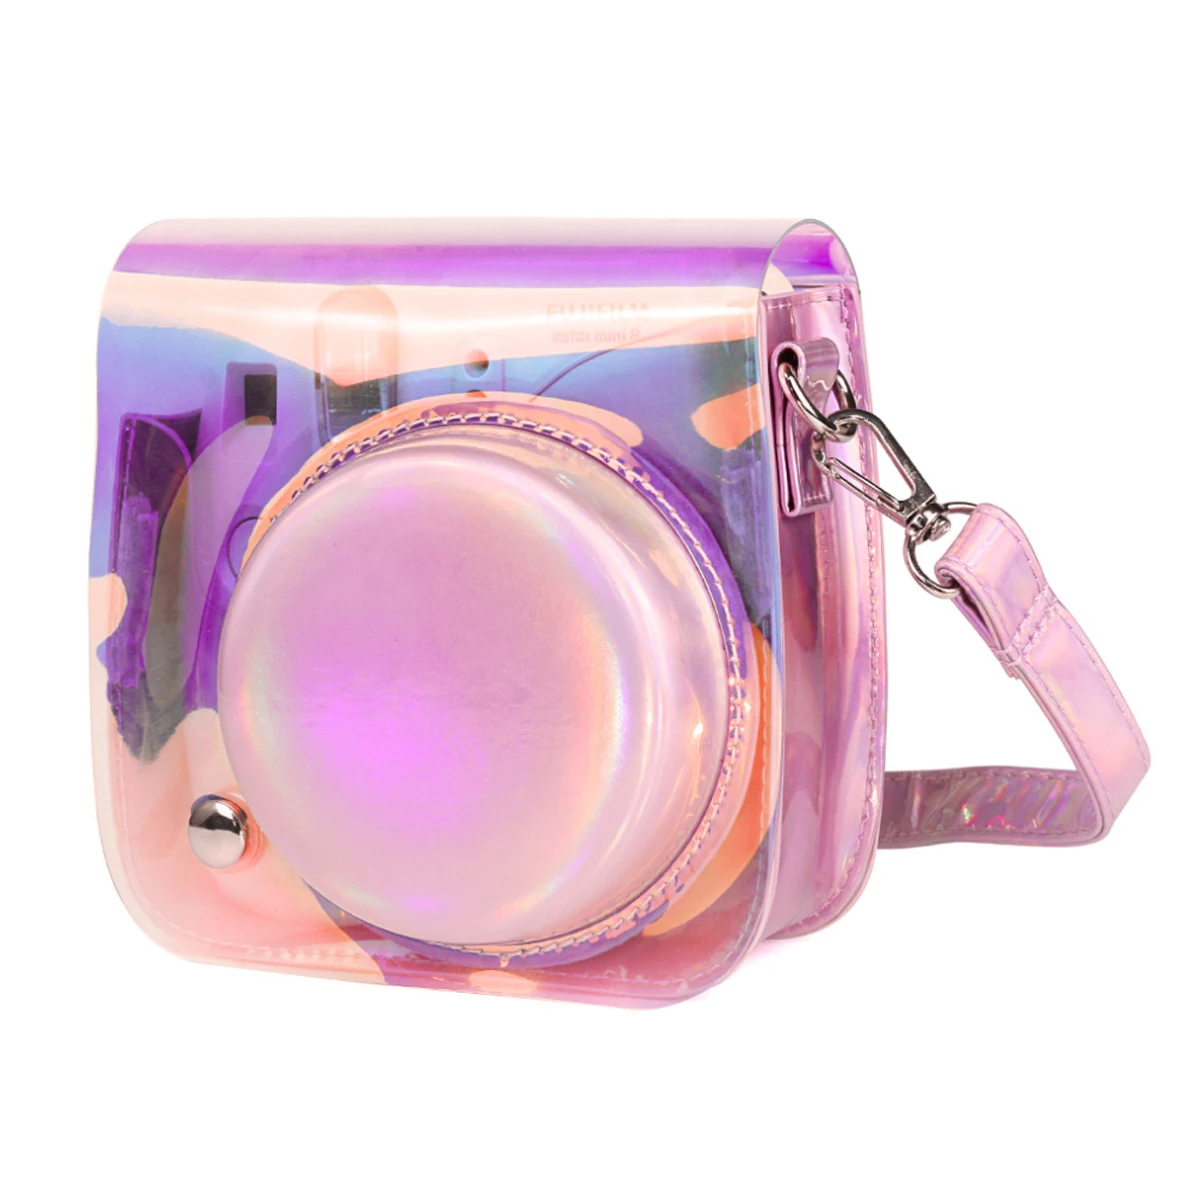 Защитная сумка Лазерная Волшебная цветная камера чехол с регулируемым плечевым ремнем для Polaroid Fujifilm Instax Mini 9 8 8+(розовый